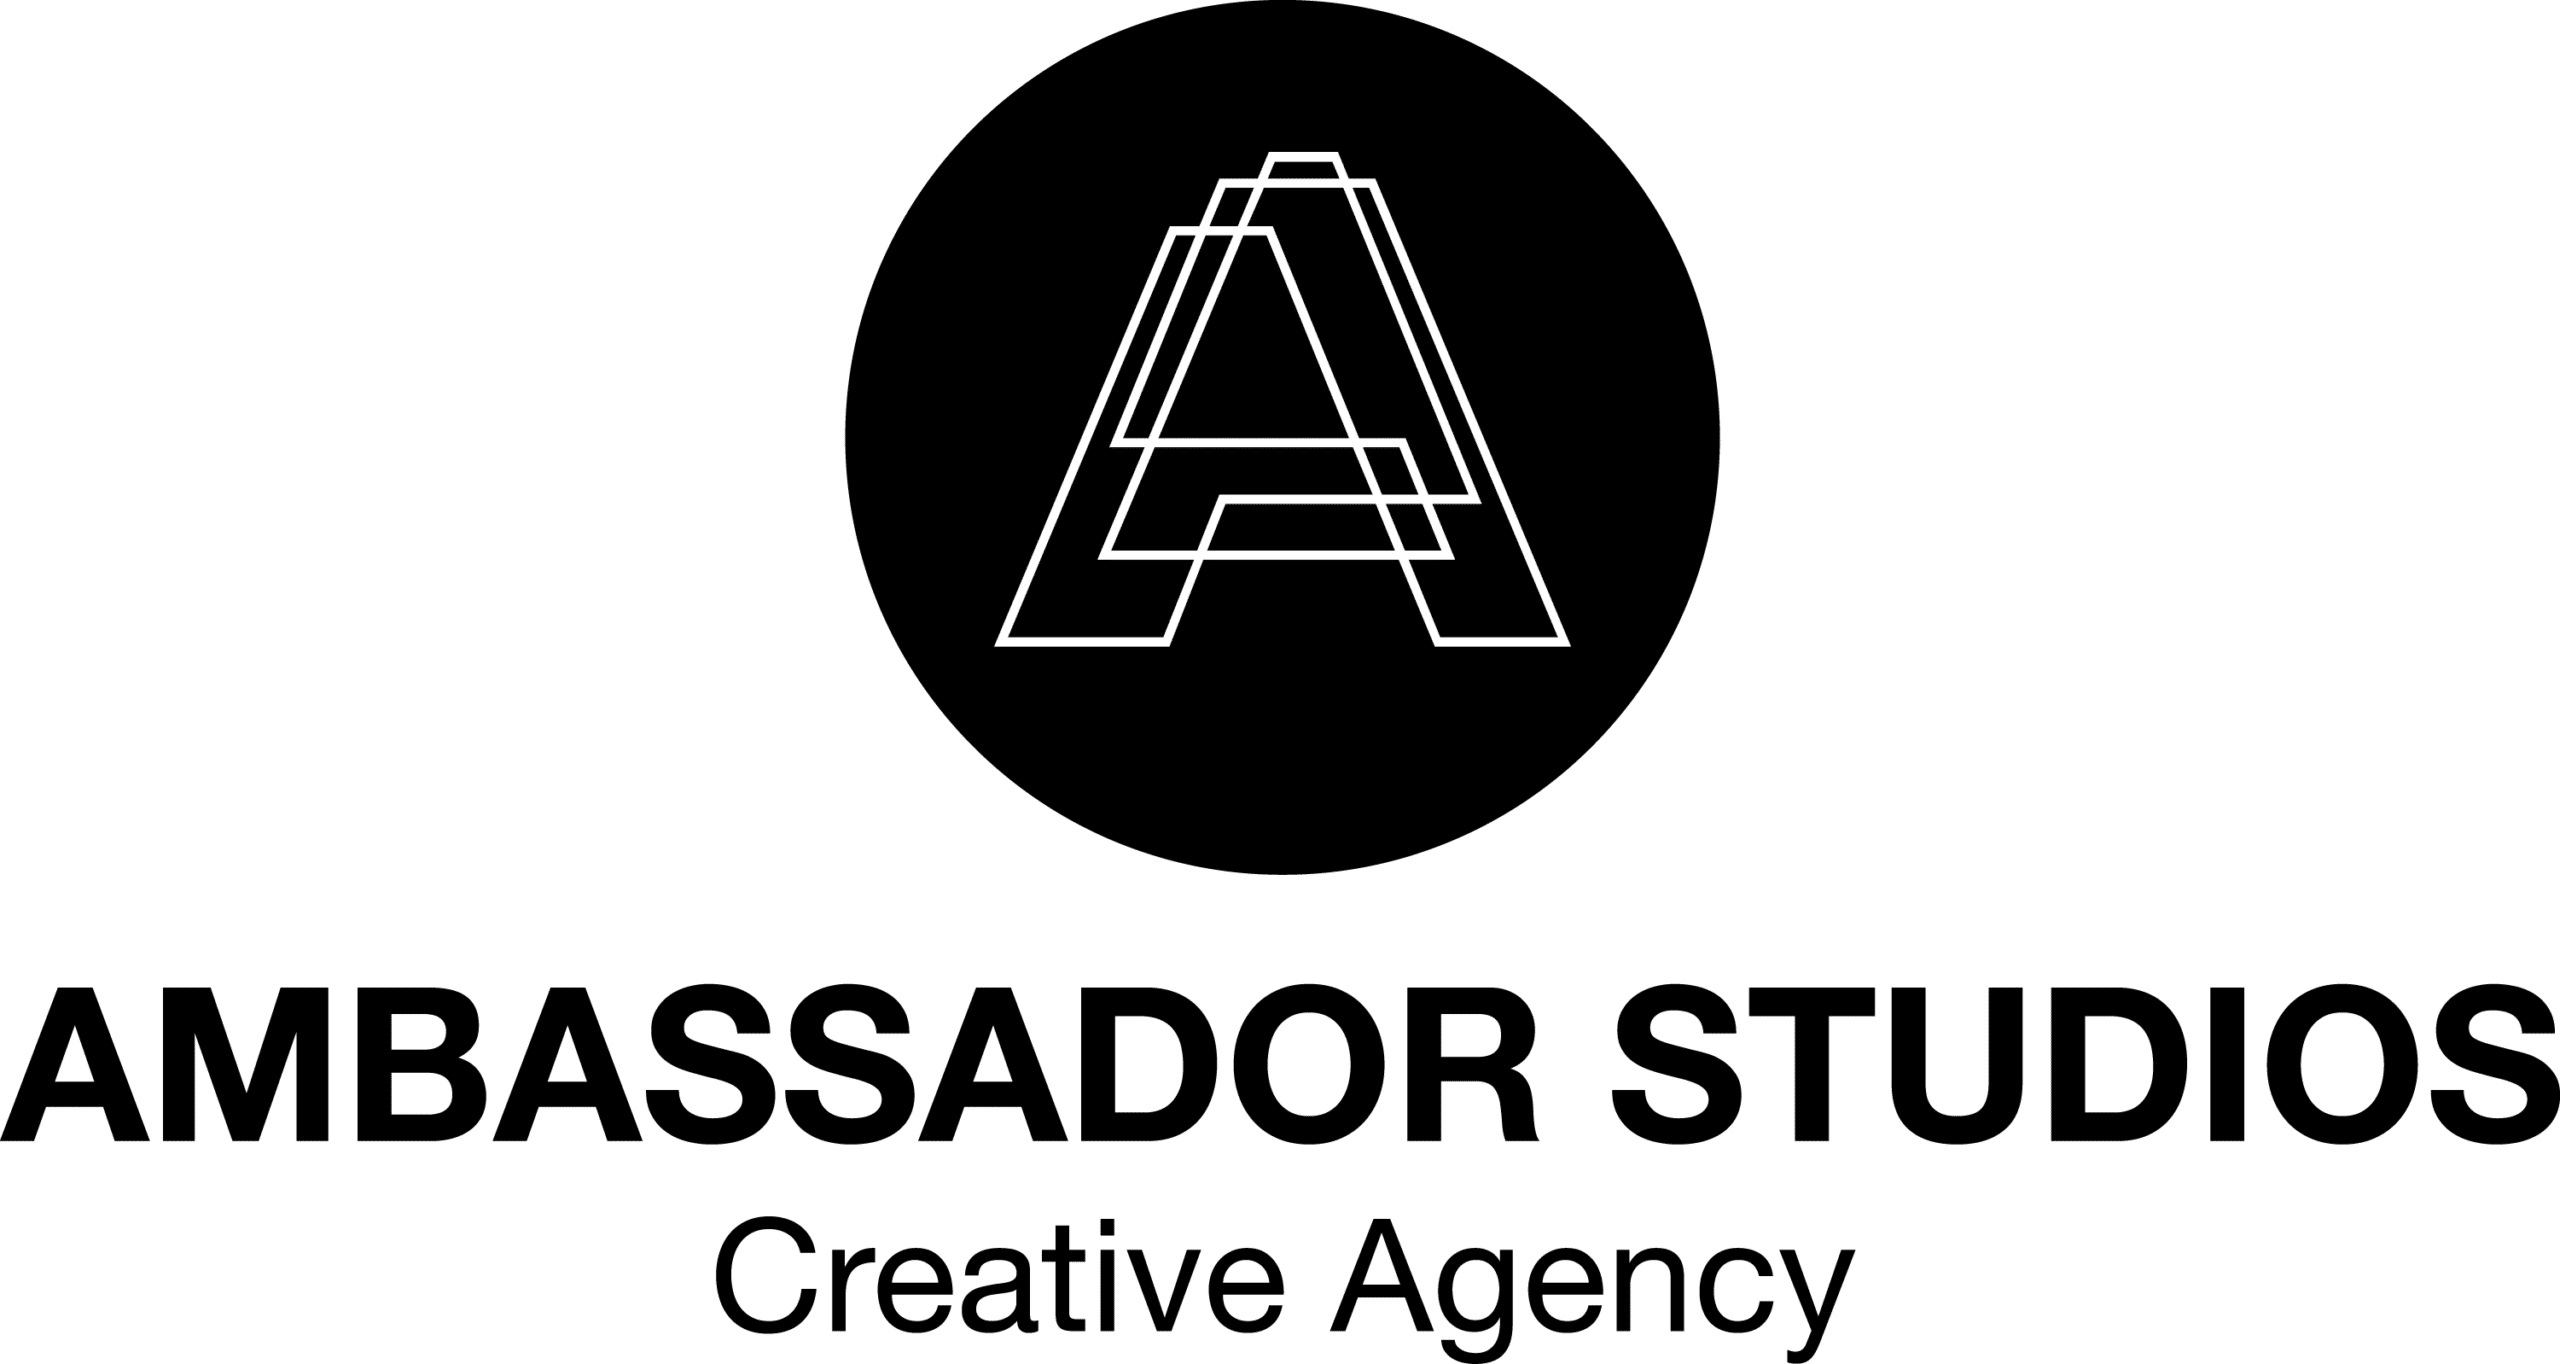 Ambassador Studios